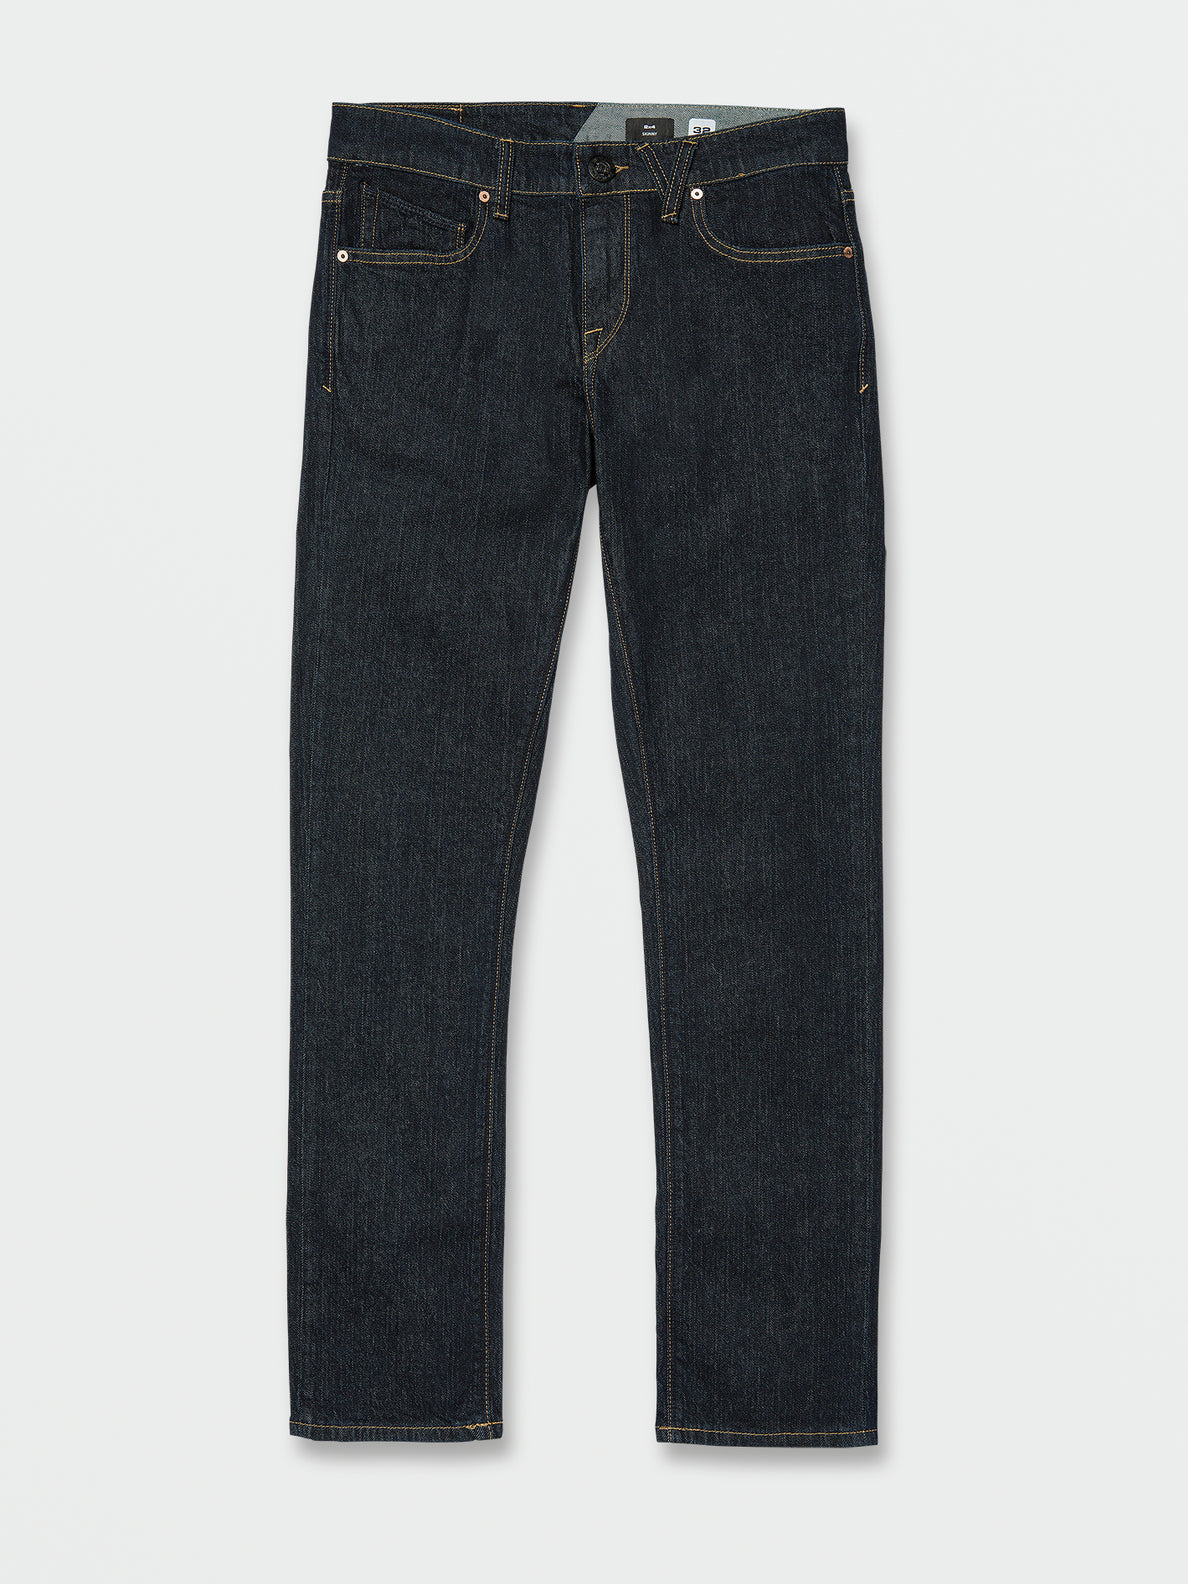 V 2X4 Stretch Jeans - Rinsed Indigo